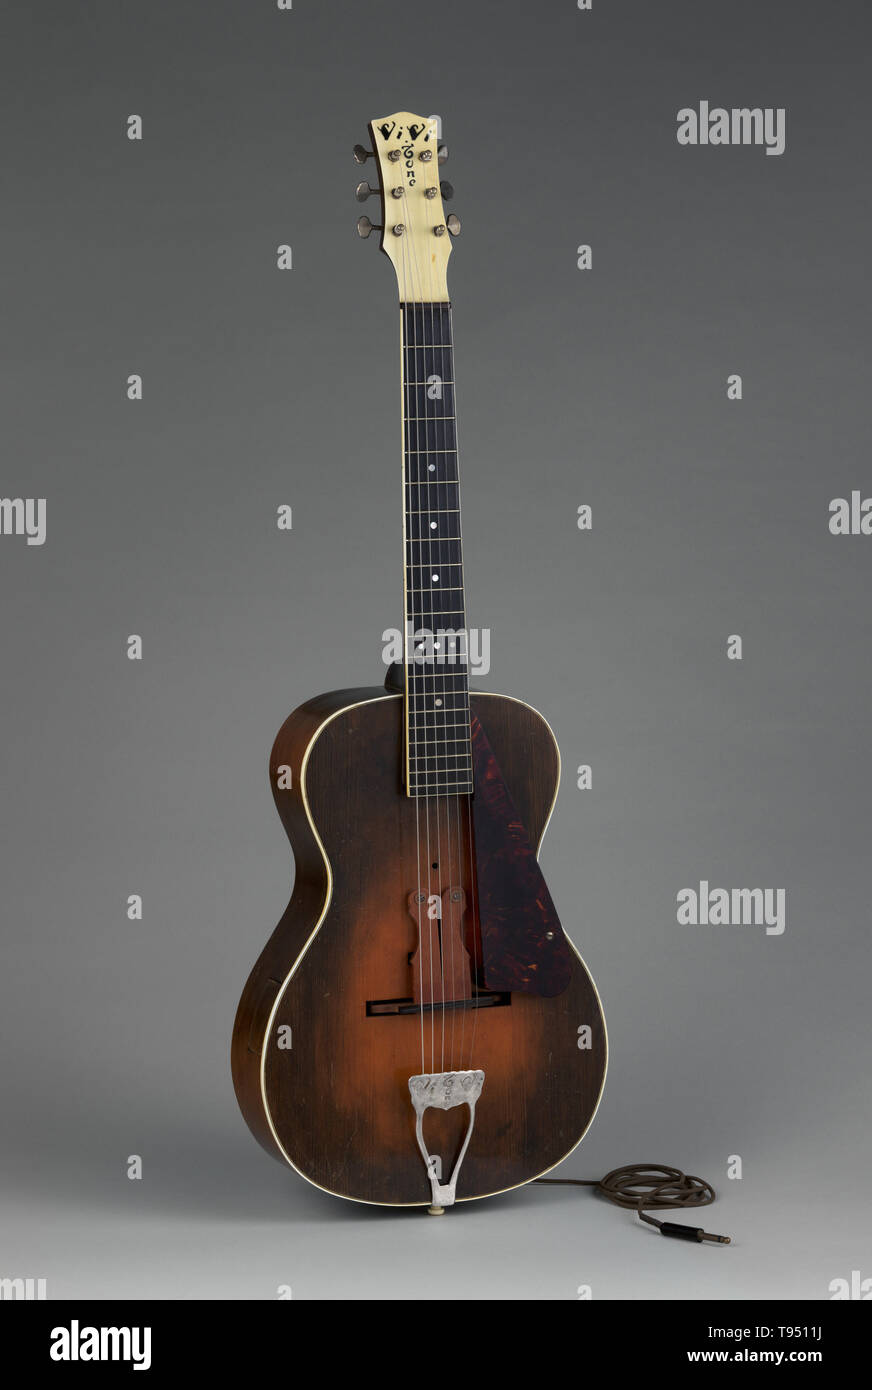 Vivi-Tone, americano, Acoustic-Electric Guitar, ca. 1933, Abete rosso, acero mogano, ebano. Il Vivi-tono di chitarra elettrica è stato uno dei primi modelli di chitarre elettriche. È stato progettato da Lloyd Loar, che era stato un ingegnere per la Gibson azienda dove egli ha creato la mitica F5 mandolino e L5 chitarra. Egli ha lasciato Gibson al fine di sperimentare con strumenti elettrici ed è stato co-fondatore della società Vivi-Tone. Loar concentrato i suoi sforzi sul elettrico stile spagnolo chitarra (es. Foto Stock